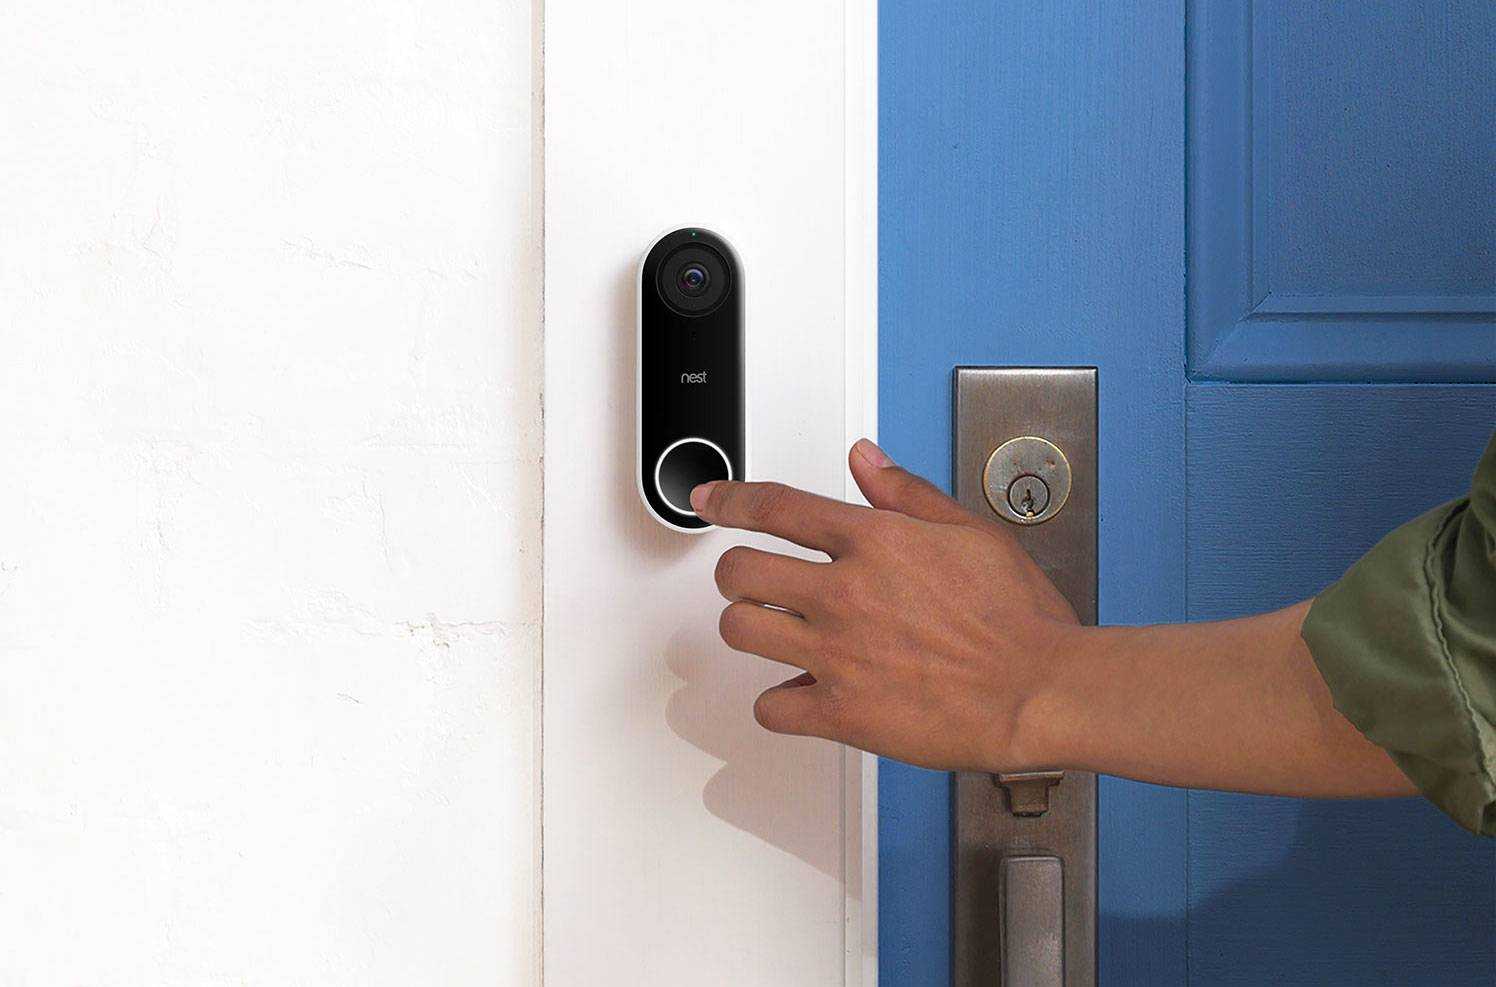 Беспроводной звонок на дверь в квартиру, как установить своими руками, схема, отзывы » verydveri.ru